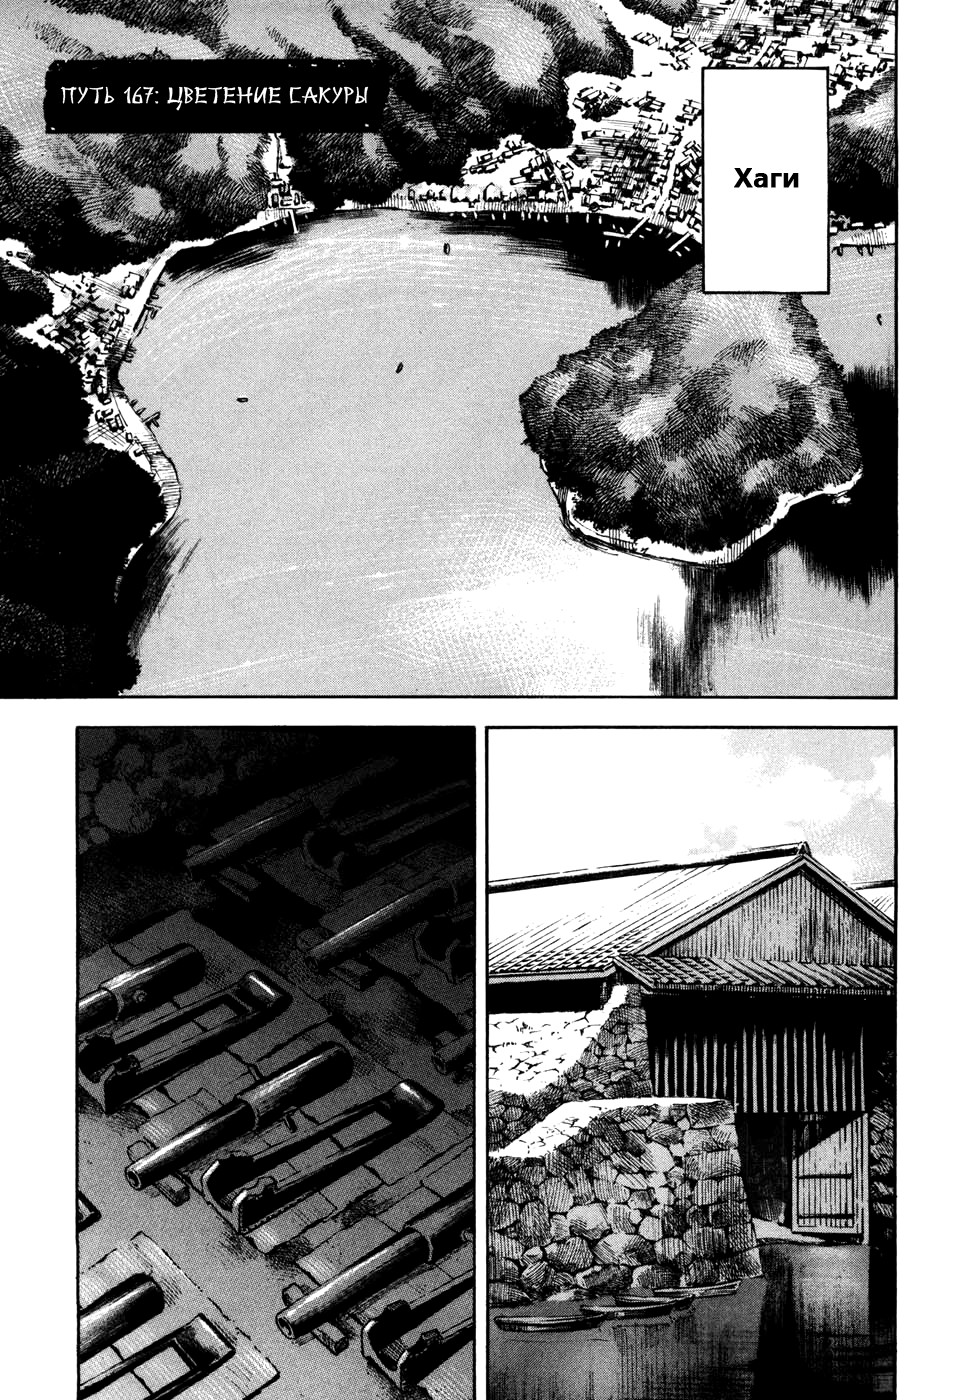 Сидо -Путь Самурая- 16 - 167 Цветение сакуры